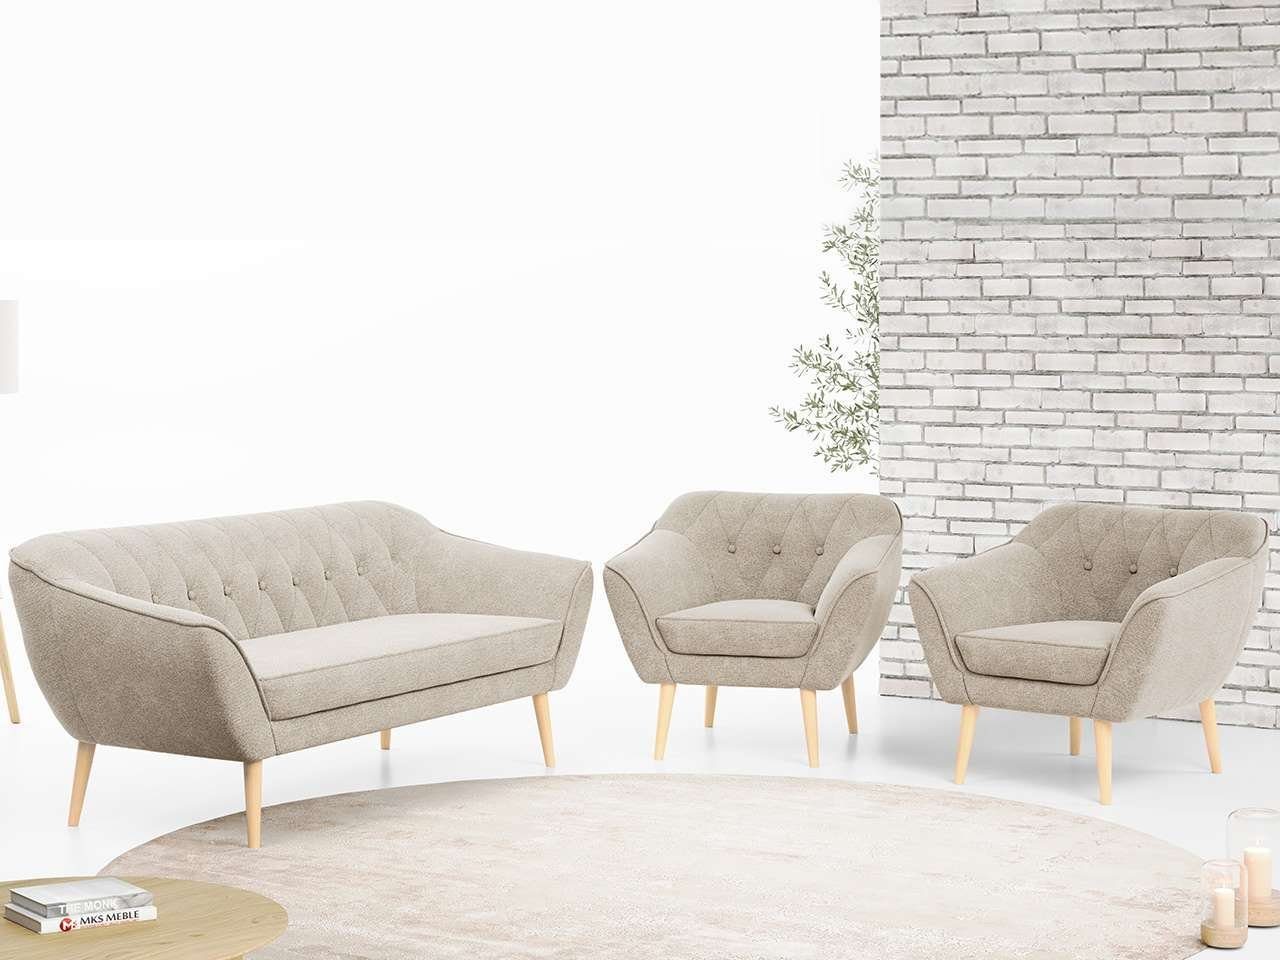 MKS MÖBEL Sofa PIRS 3 1 1, mit Relaxfunktion, Moderne Sofa Set, Skandinavische Deko Beige Matana | Alle Sofas